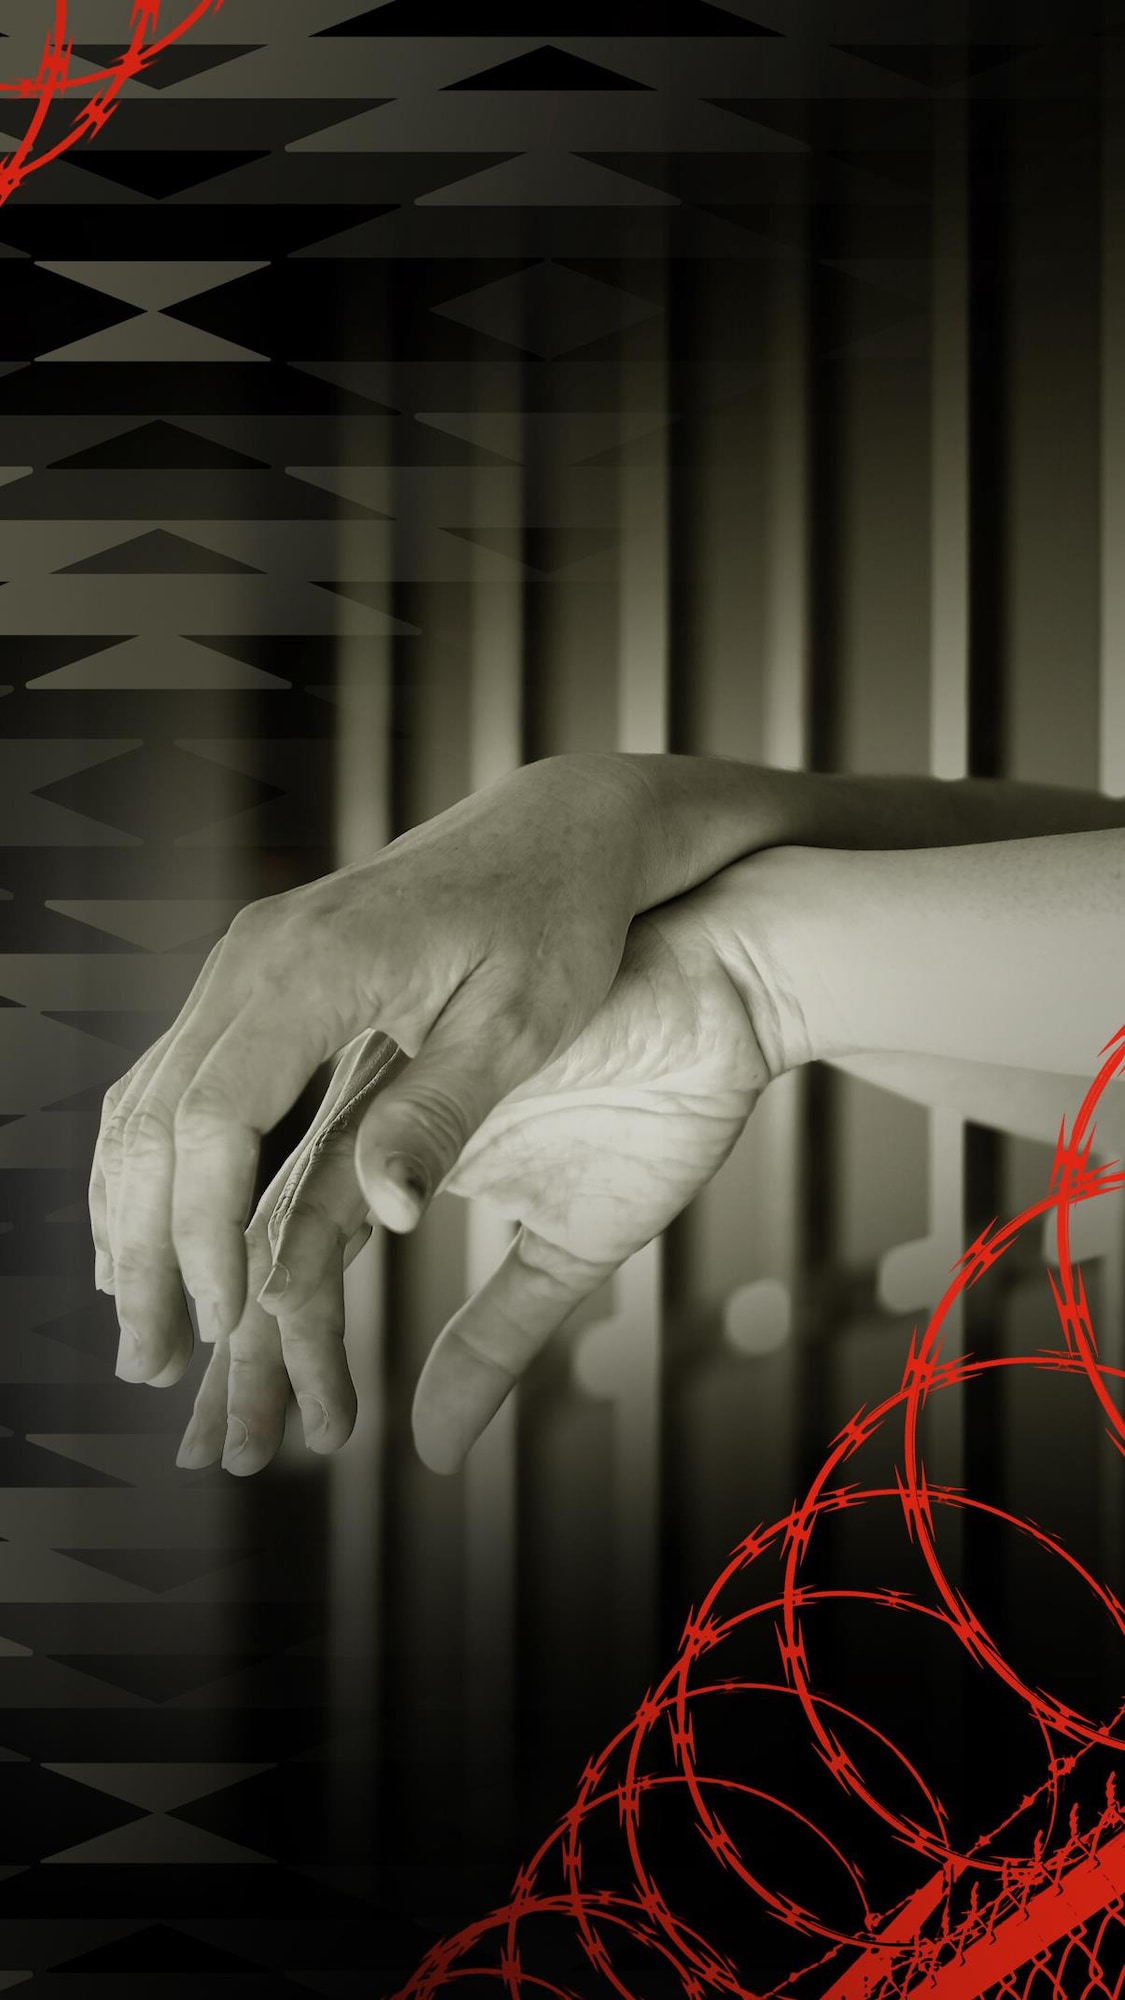 Une illustration de barbelés devant des bras d'une prisonnière passés entre les barreaux d'une cellule.